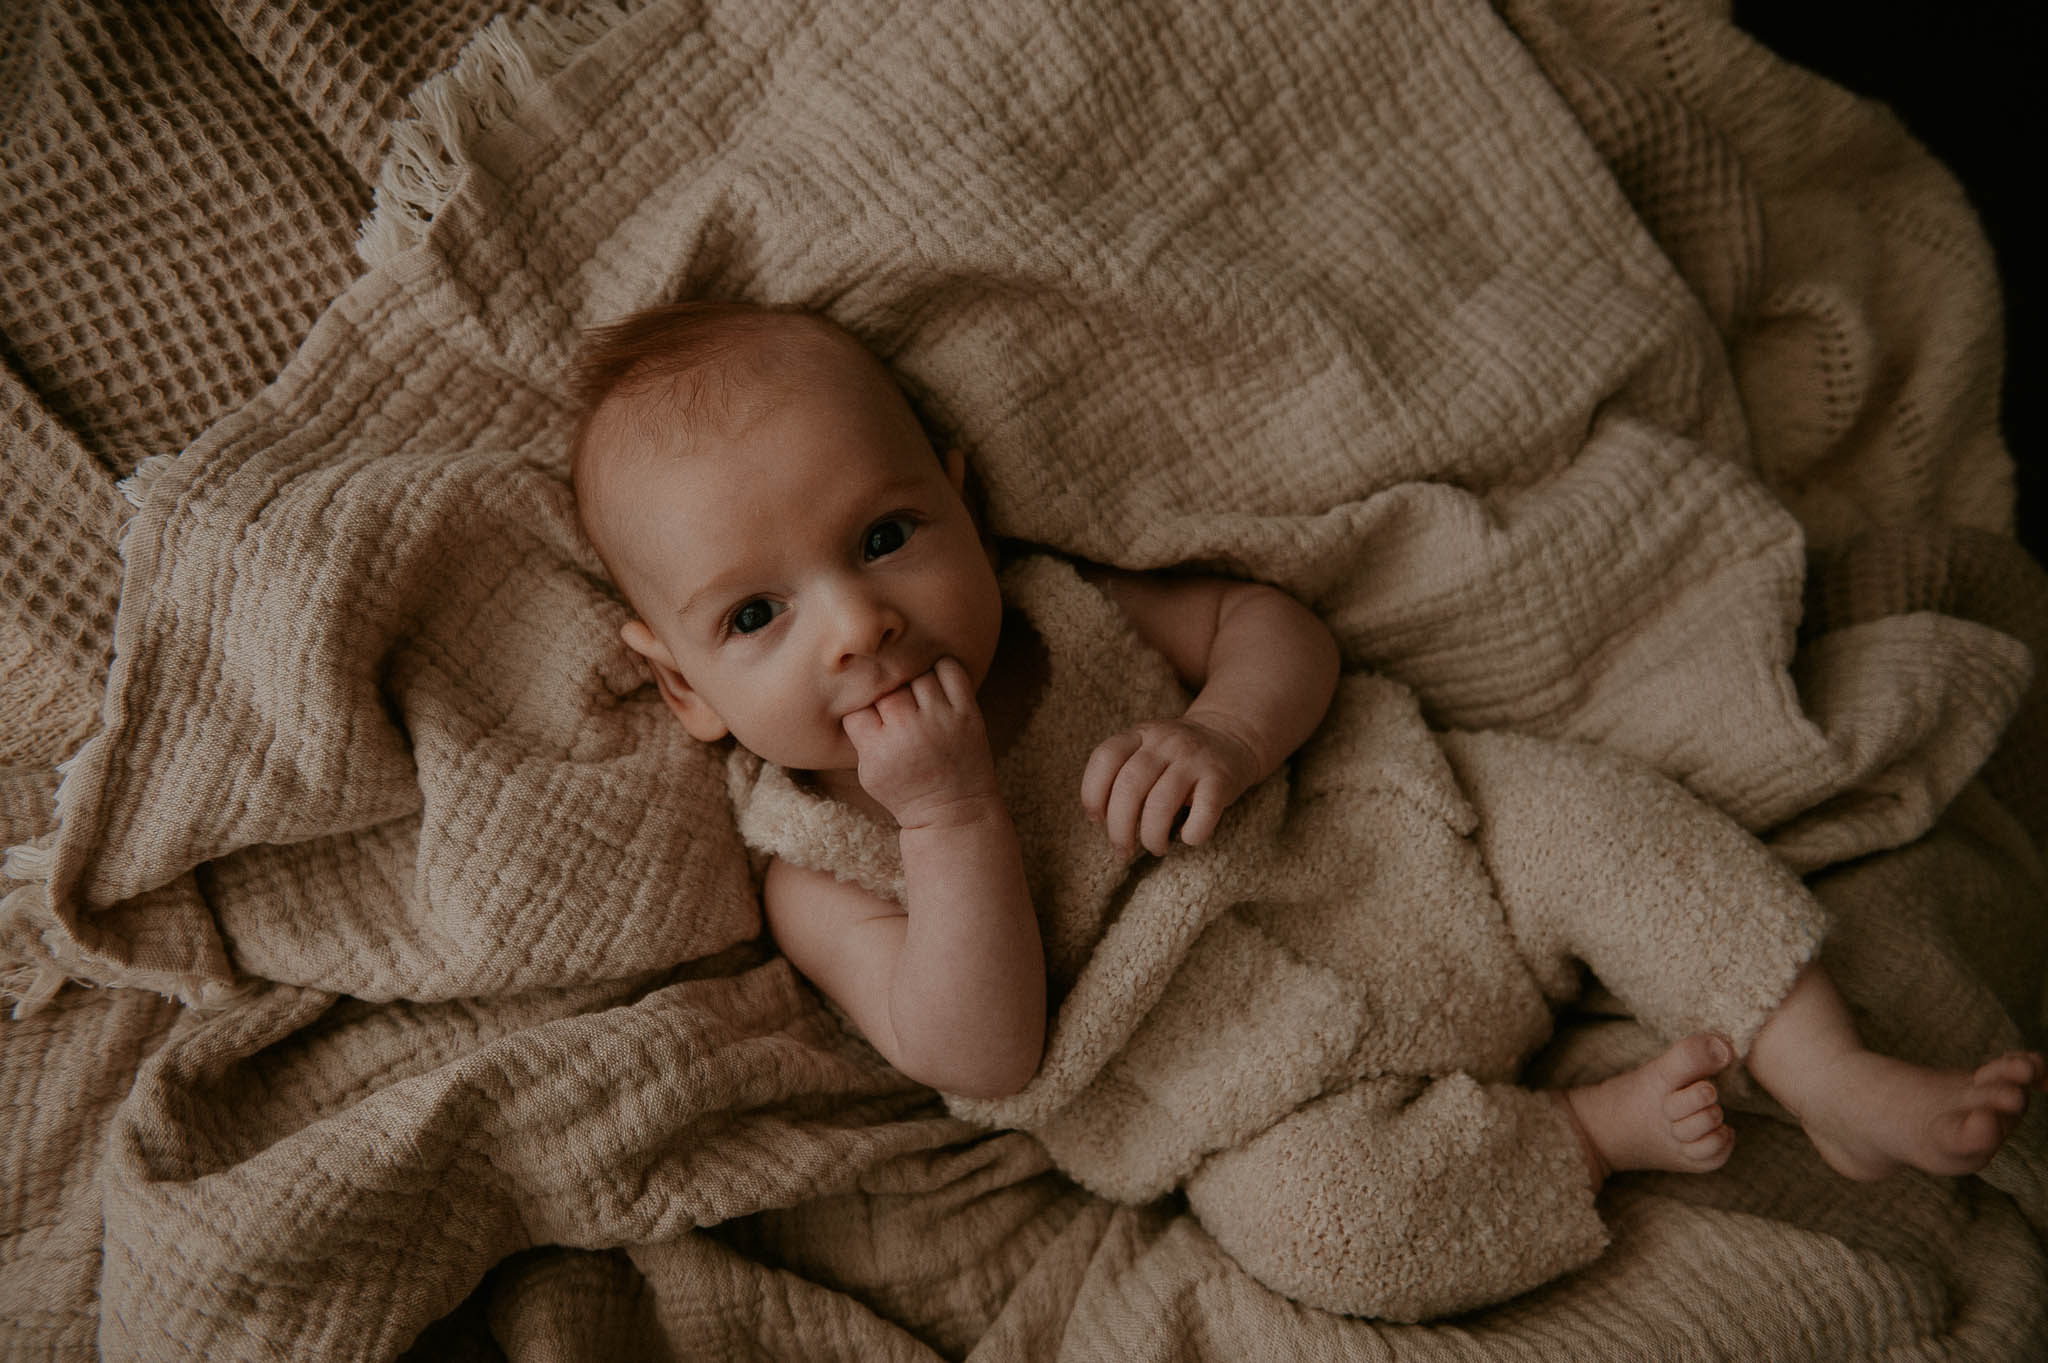 southampton-newborn-photography-626